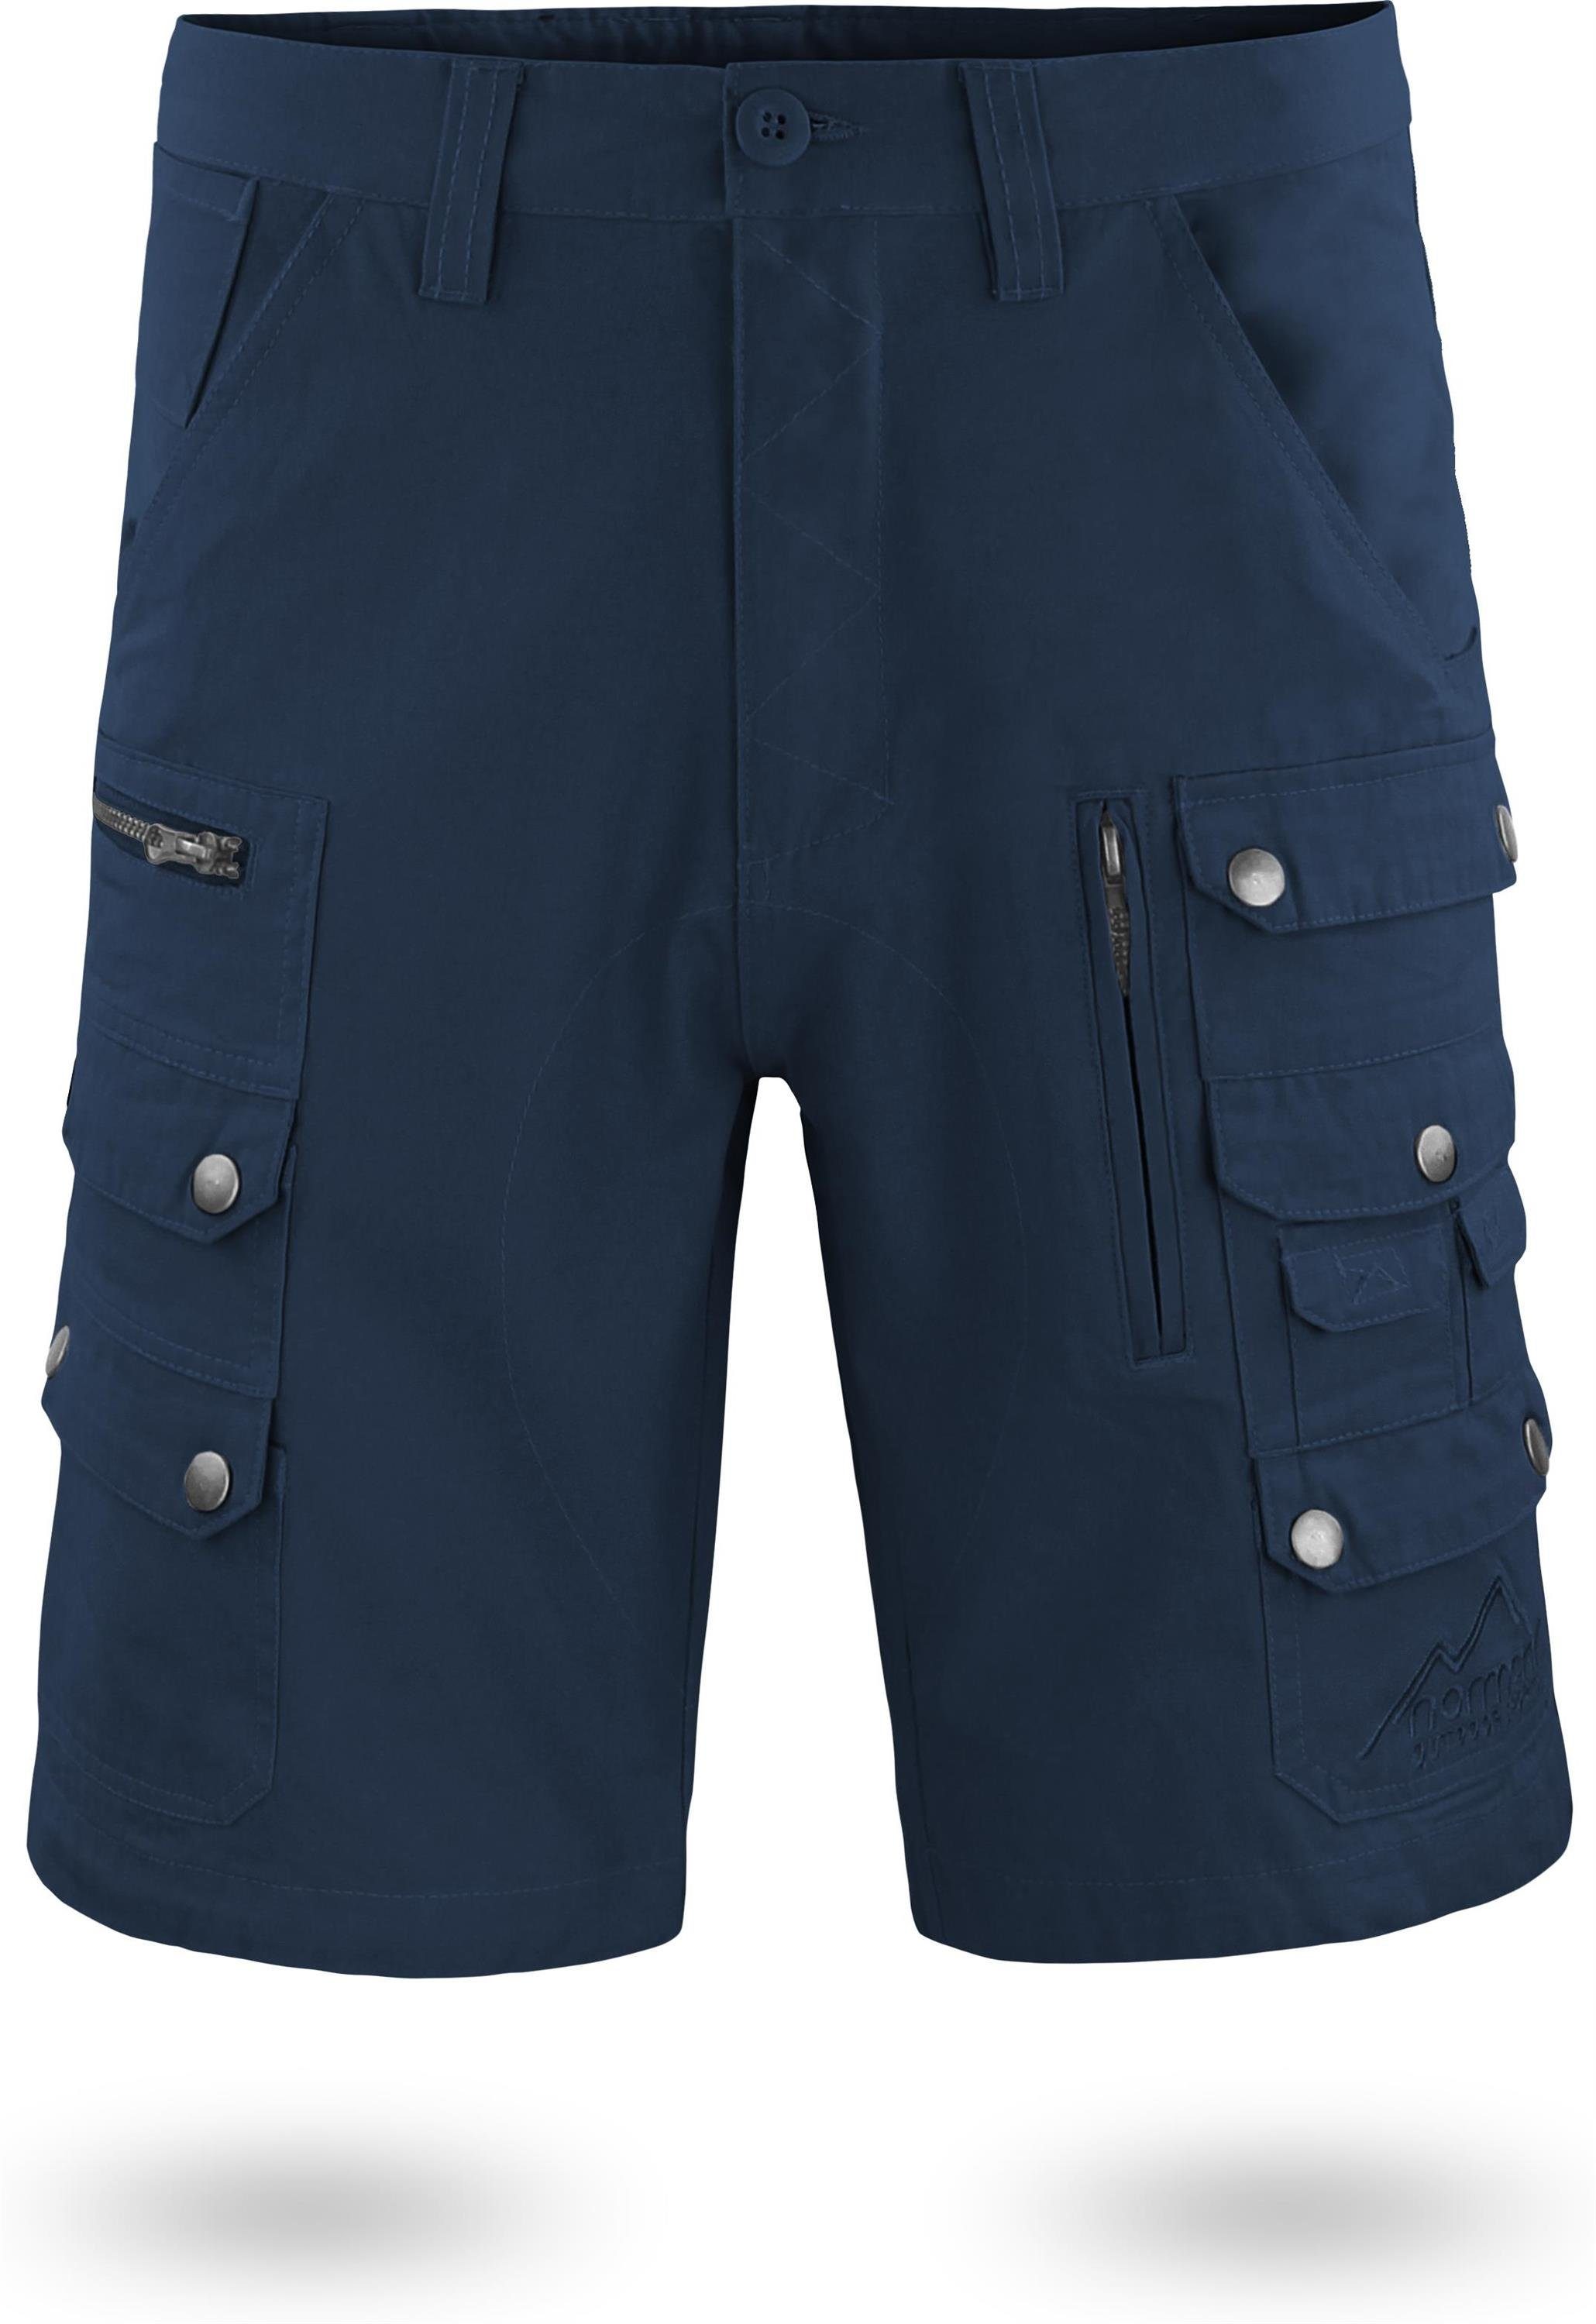 normani Bermudas Sommershorts Cargo-Shorts Taschen Mojave kurze Bio-Baumwolle mit Herren Shorts aus Arbeitsshorts Navy 100% diversen